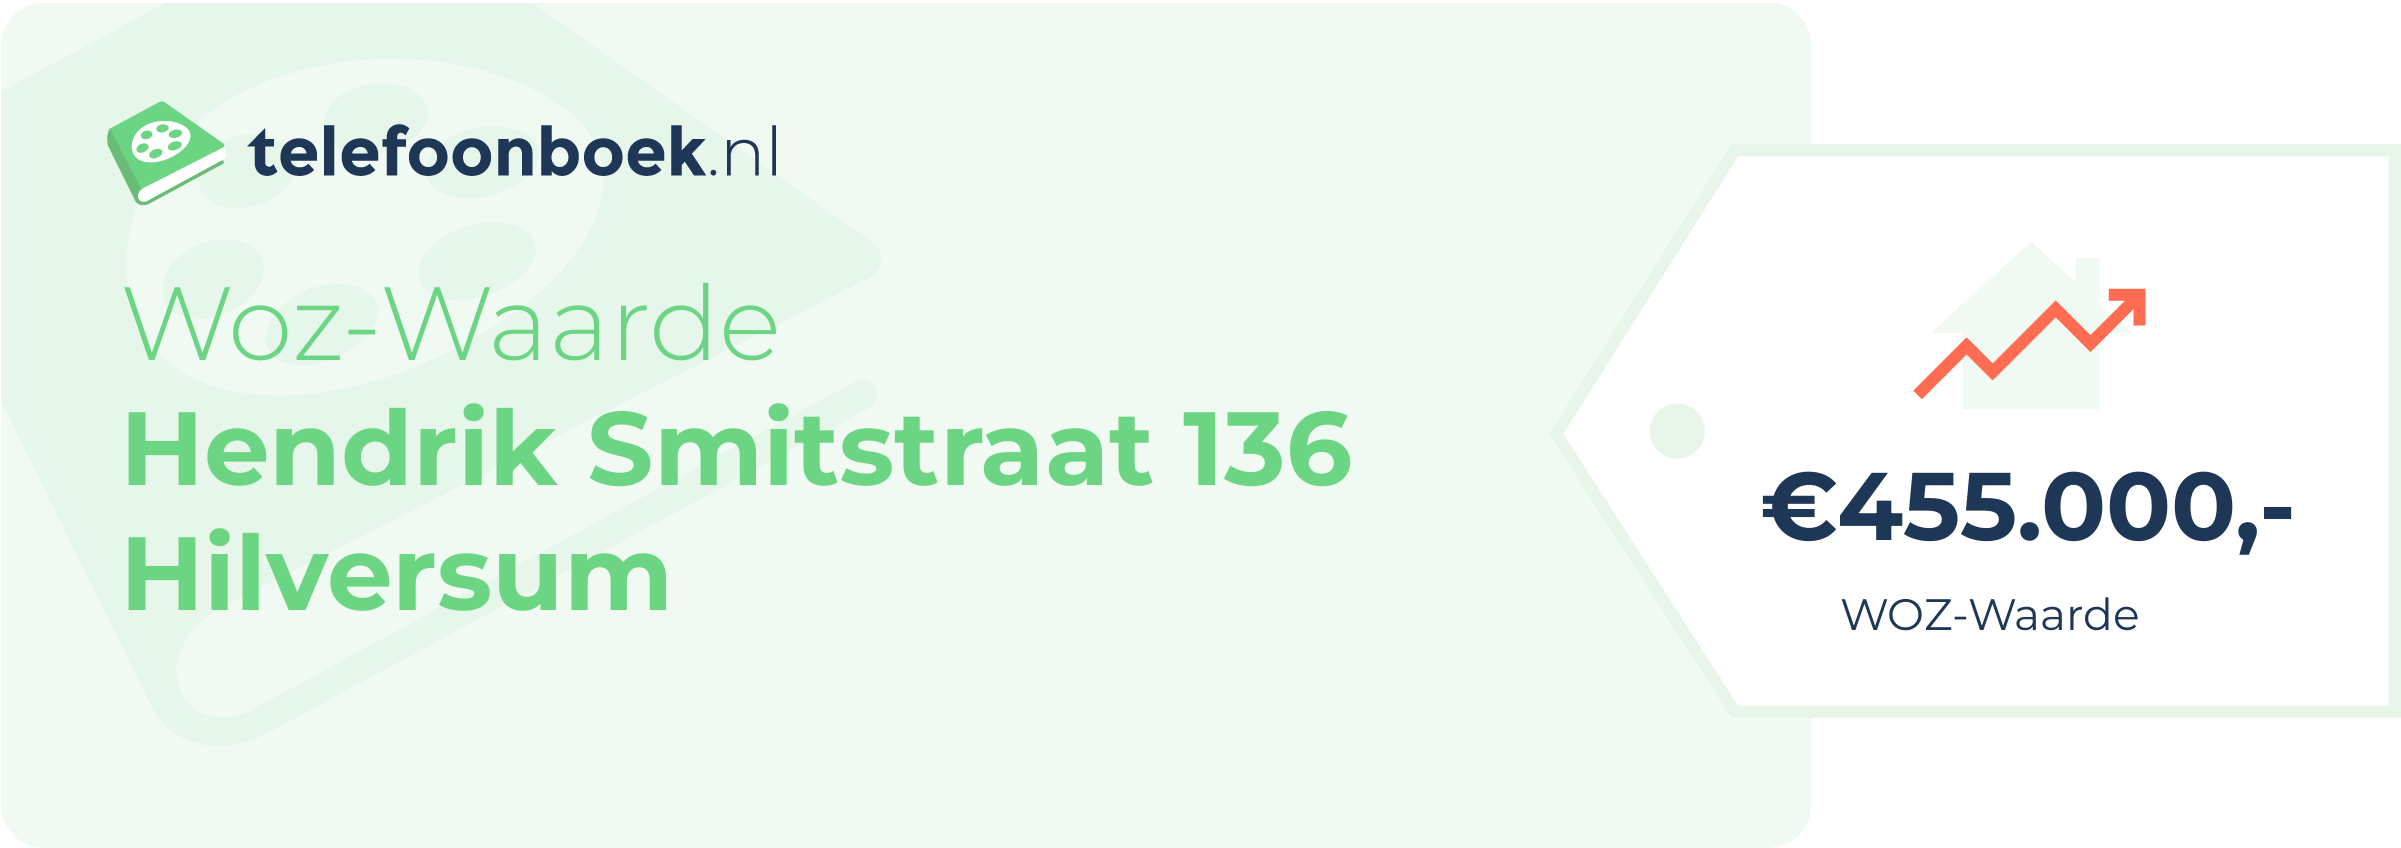 WOZ-waarde Hendrik Smitstraat 136 Hilversum